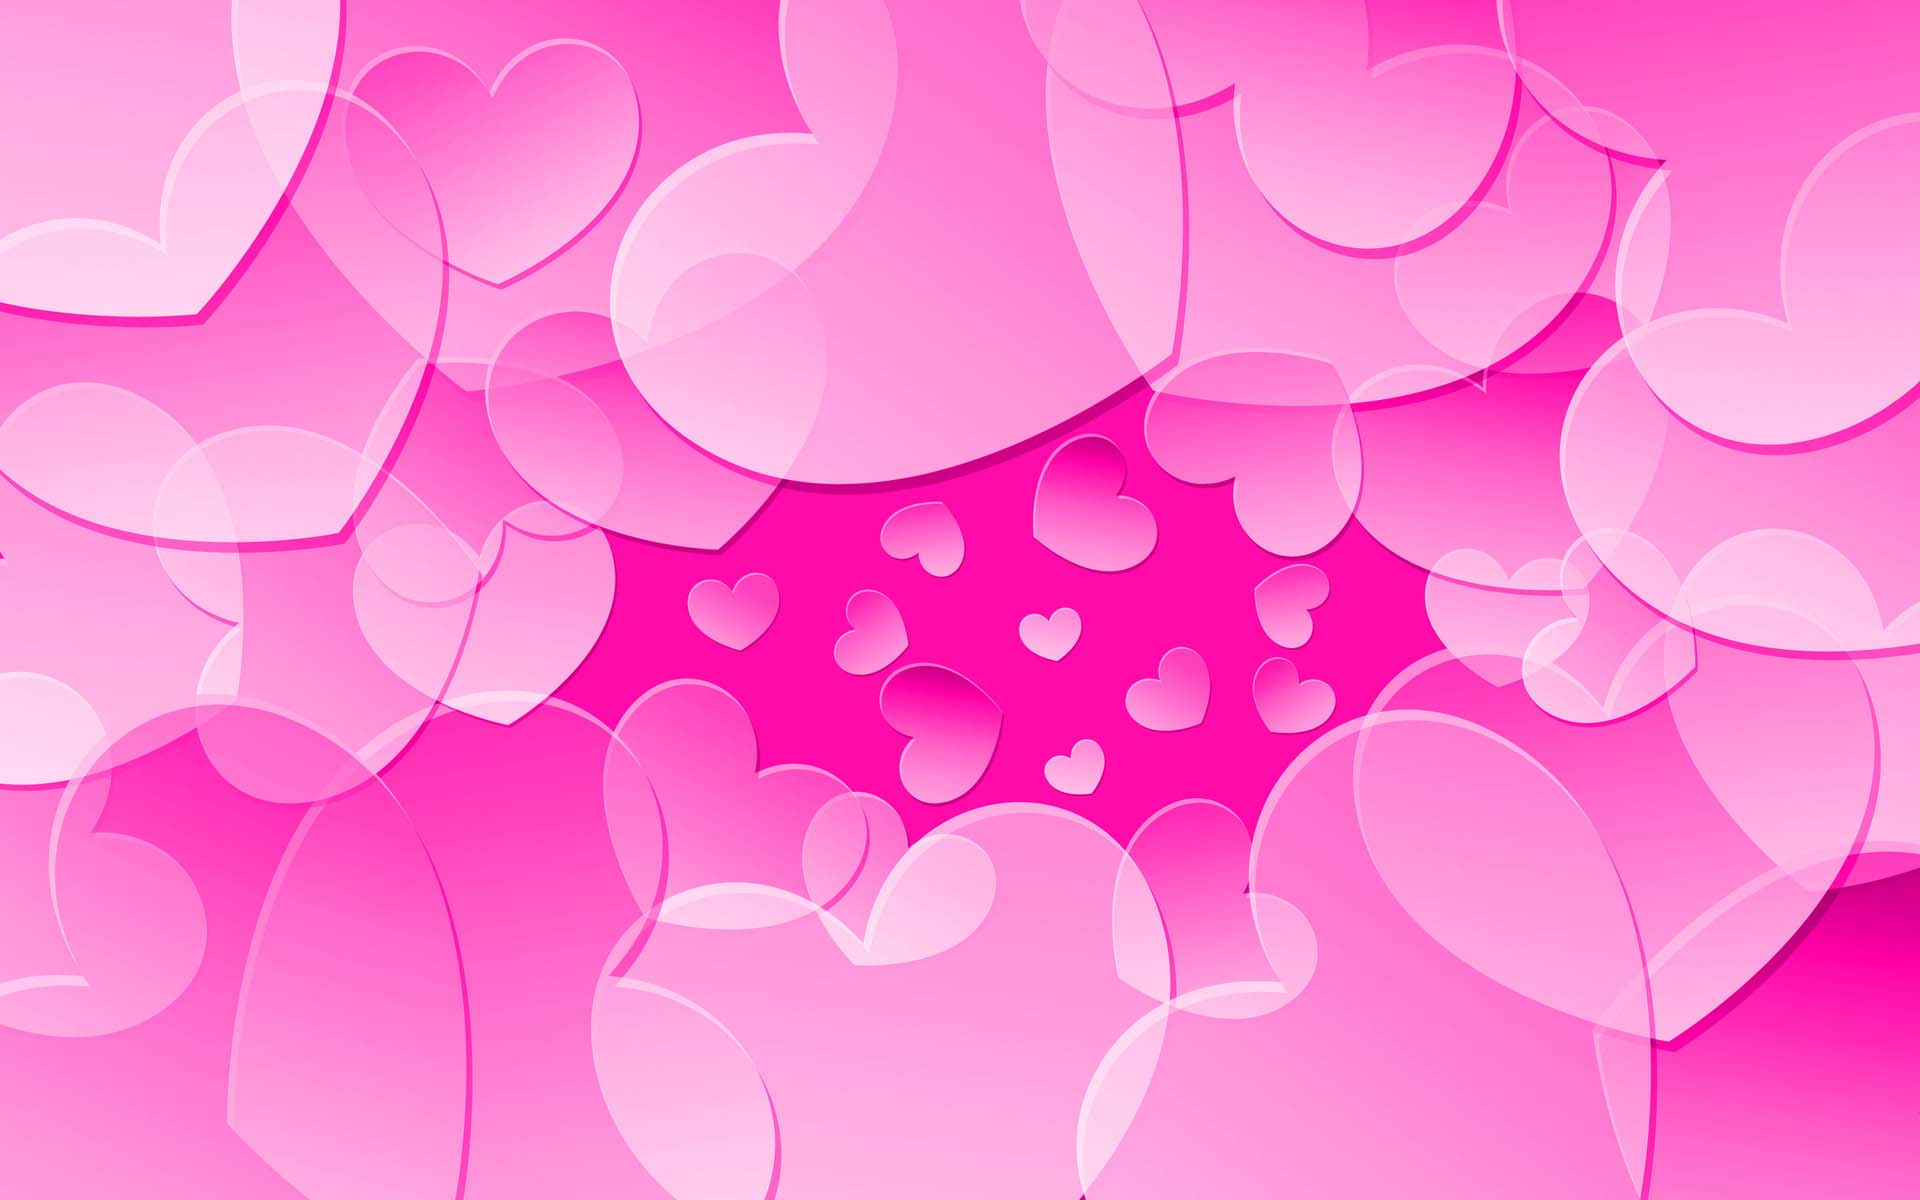 Hình nền Lễ tình nhân màu hồng - Để kích thích tình yêu lứa đôi, hình nền lễ tình nhân màu hồng sẽ để lại ấn tượng ngọt ngào với những con tim đang yêu nhau. Mỗi khi nhìn vào điện thoại, bạn sẽ thấy bản thân cực kì đáng yêu.